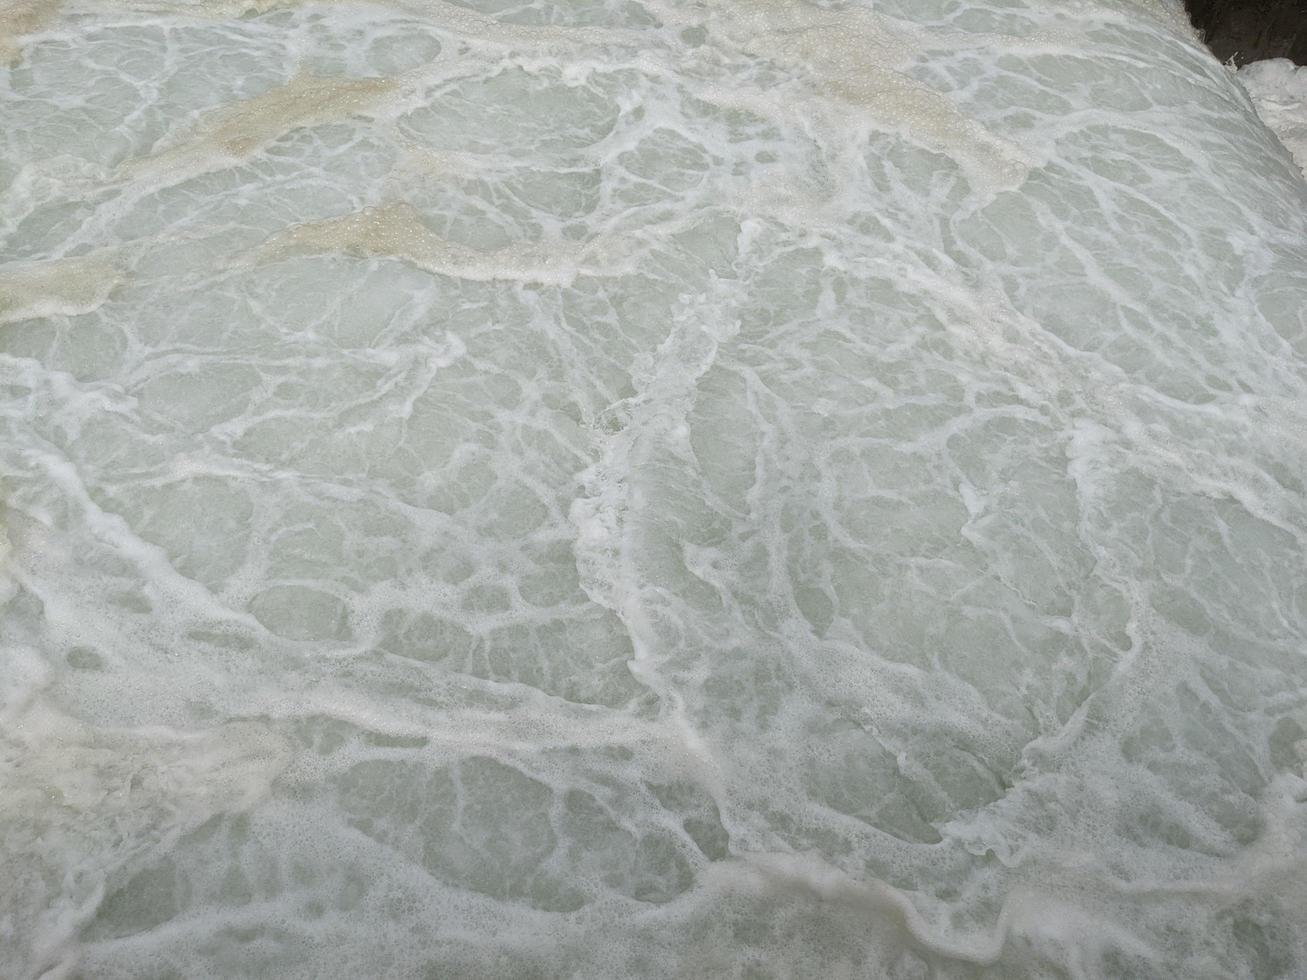 textura y superficie de Agua de mar otoño en el poder planta con espumoso en el desagüe. el foto es adecuado a utilizar para industria fondo, ambiente póster y naturaleza contenido.